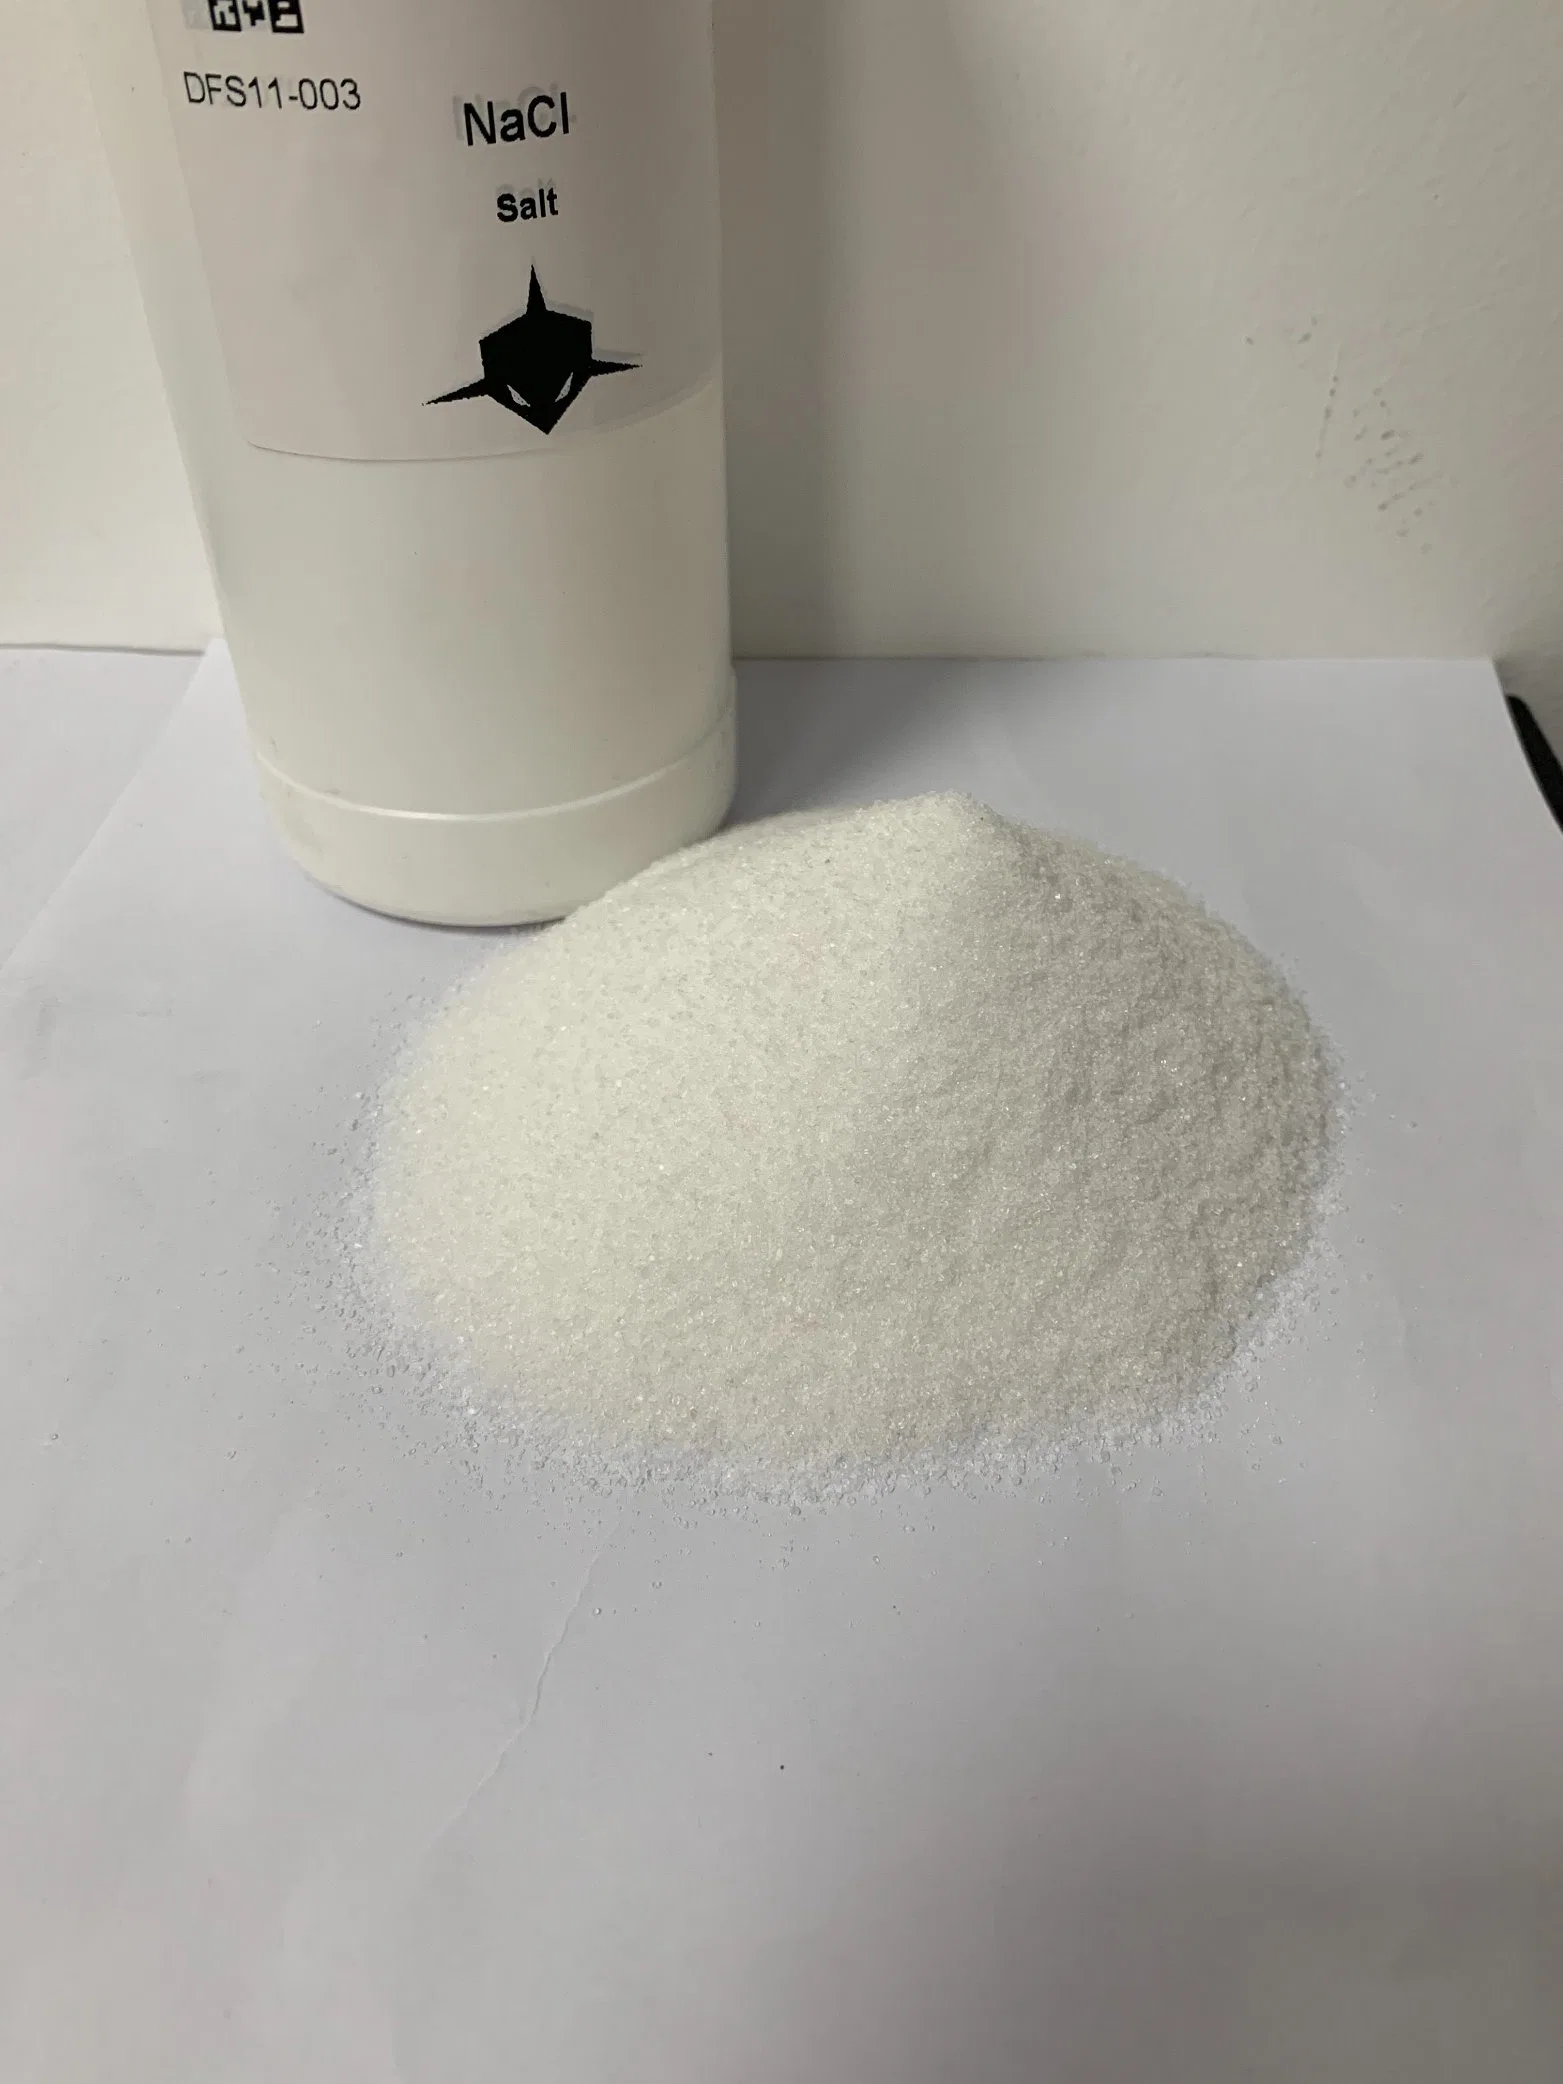 المادة المضافة لسائل الحفر اللوني غير العضوي من ملح-كلوريد الصوديوم